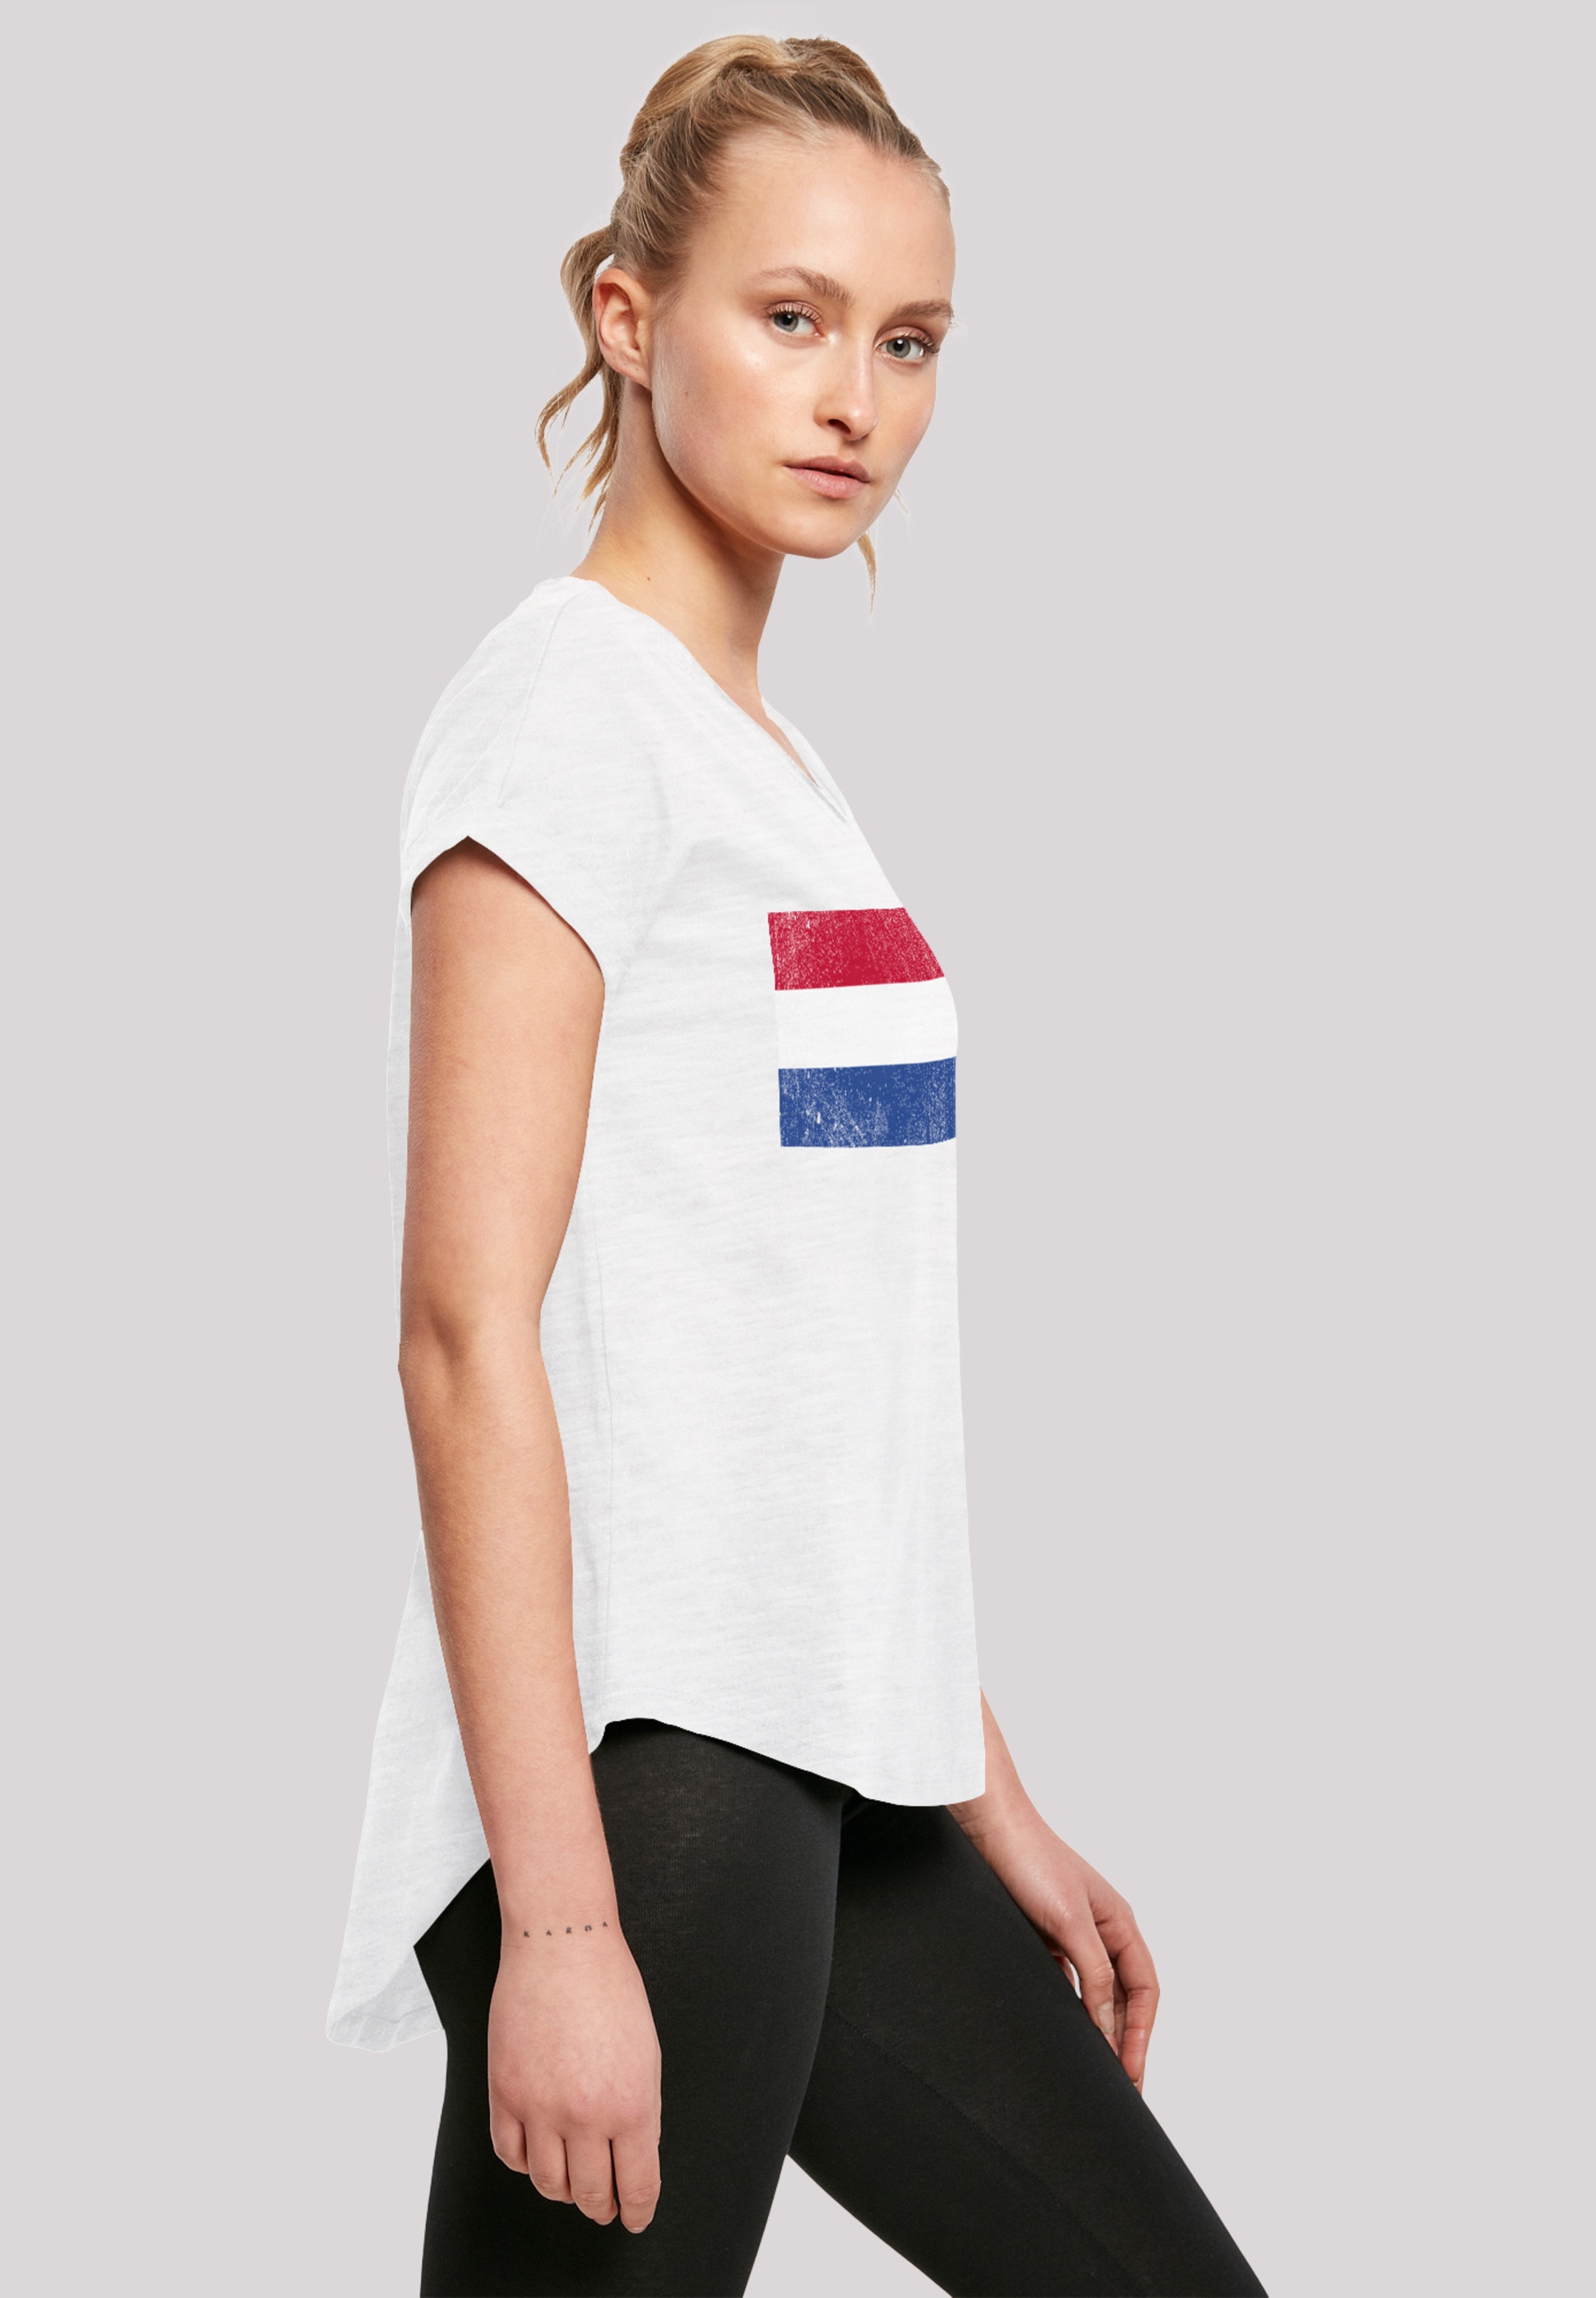 distressed«, F4NT4STIC Print Holland T-Shirt »Netherlands shoppen Flagge NIederlande